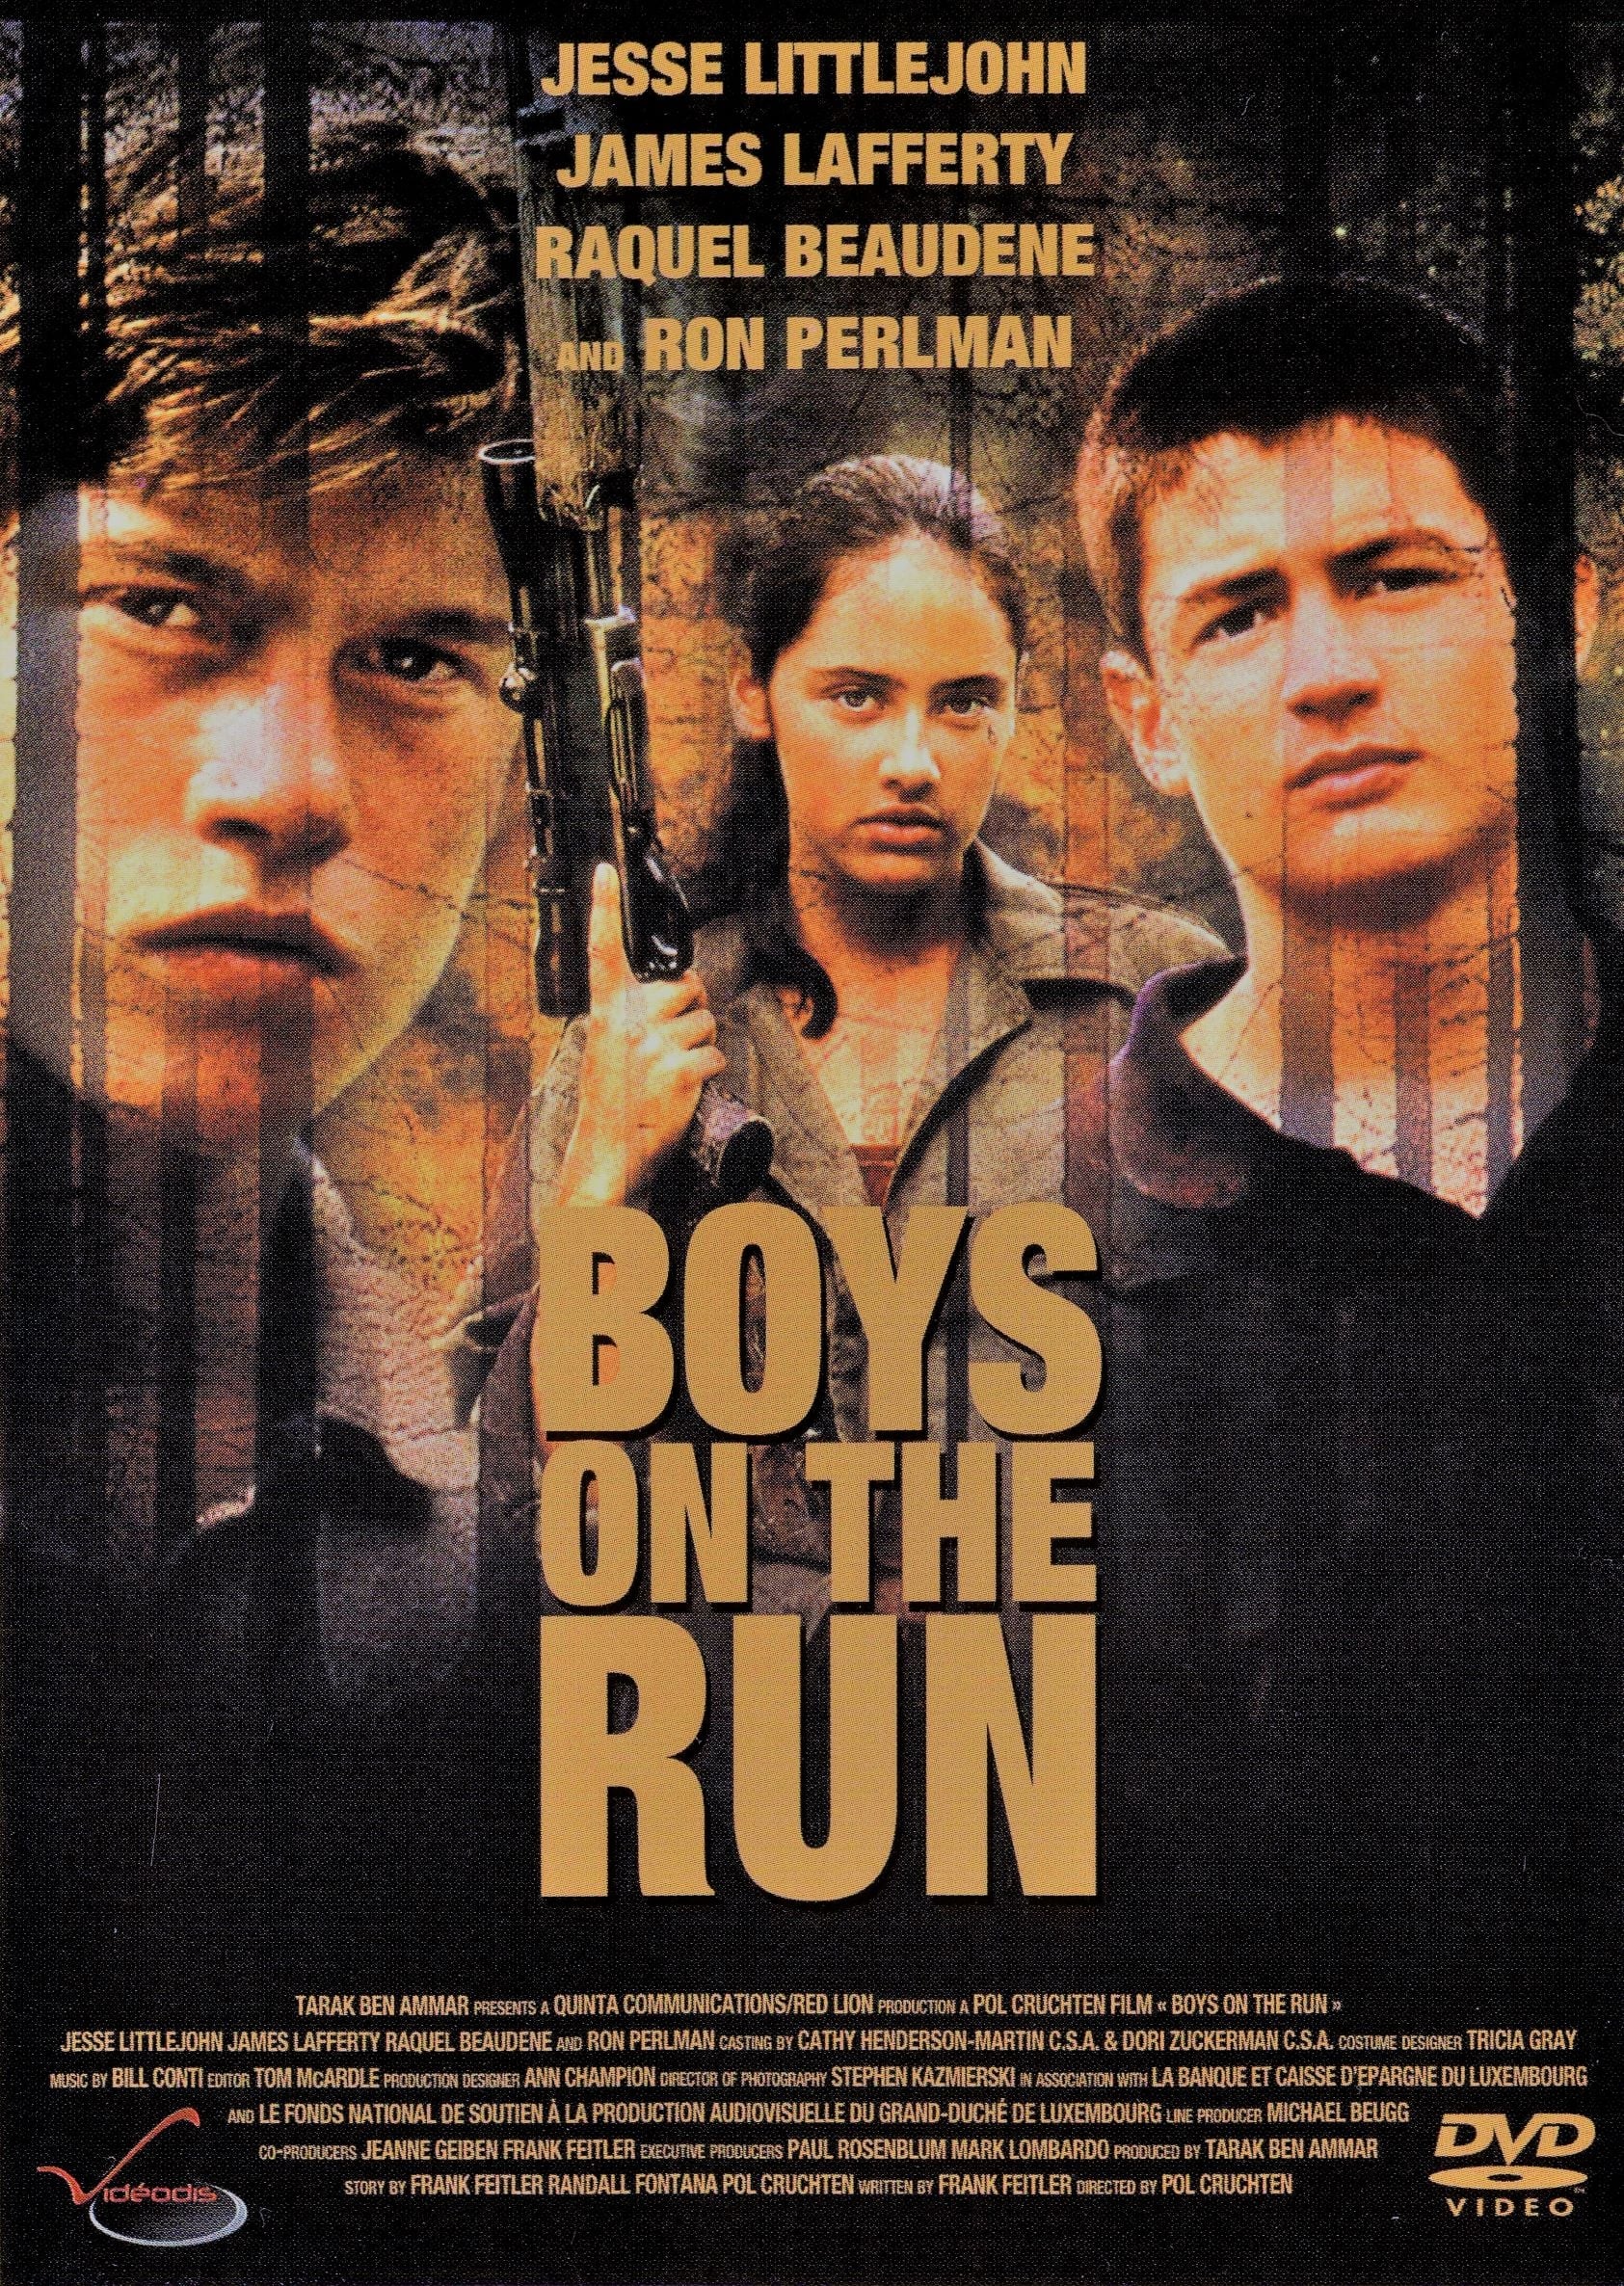 Plakat von "Boys on the Run"